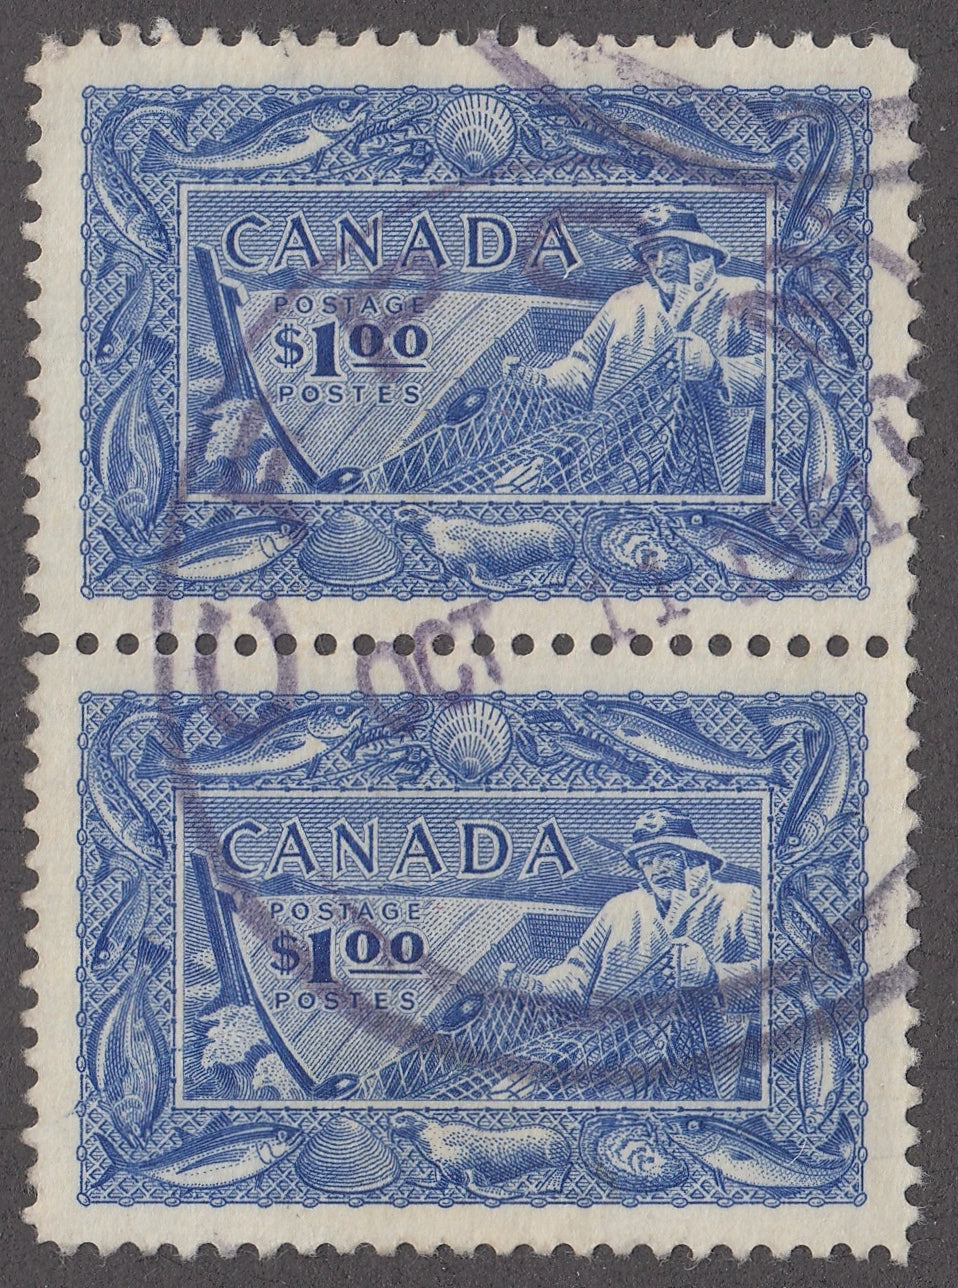 0302CA2106 - Canada #302 - Vert. Pair